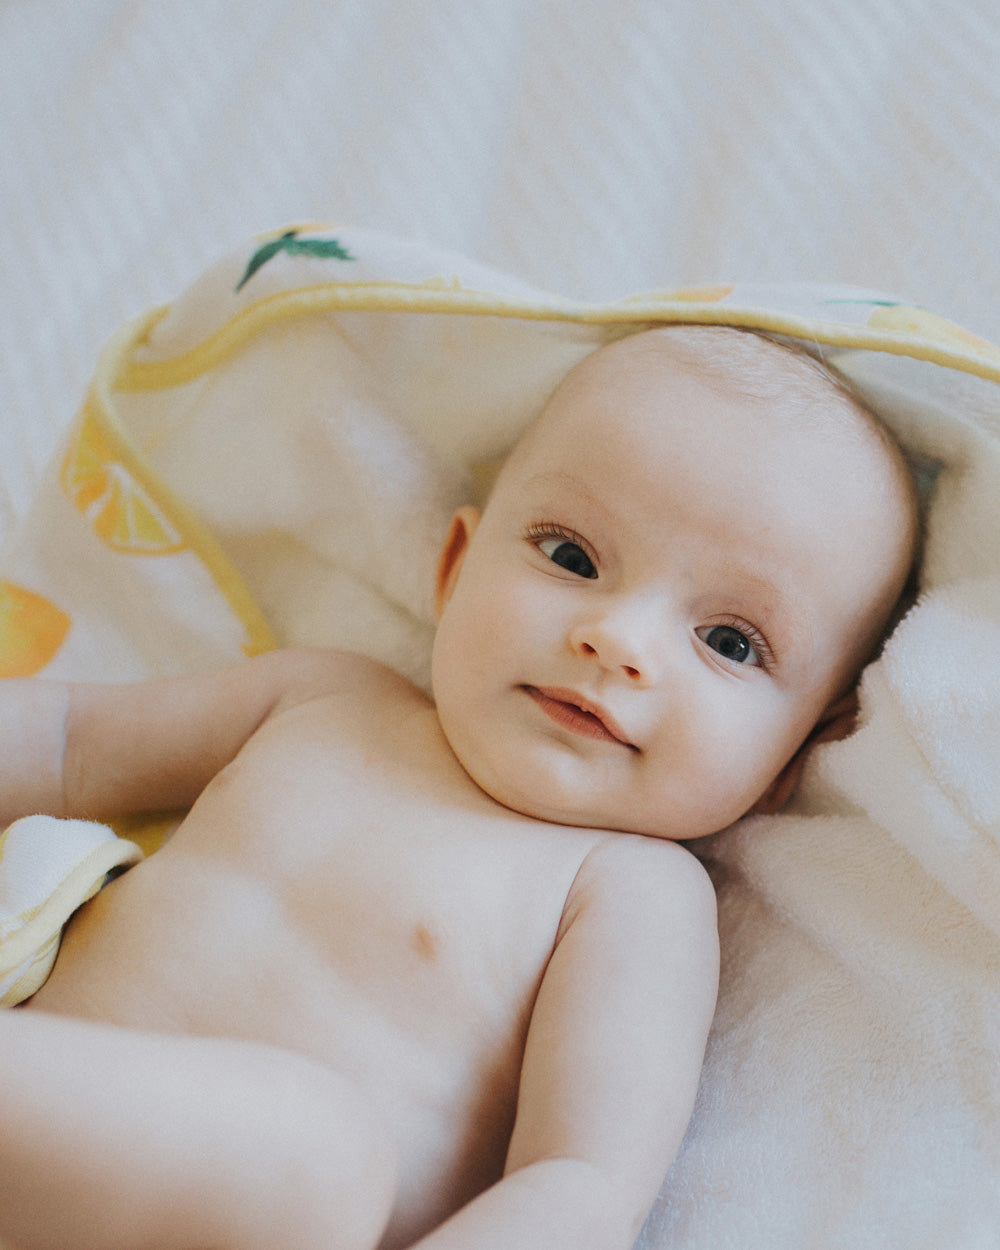 Little Unicorn Infant Hooded Towel | Lemon